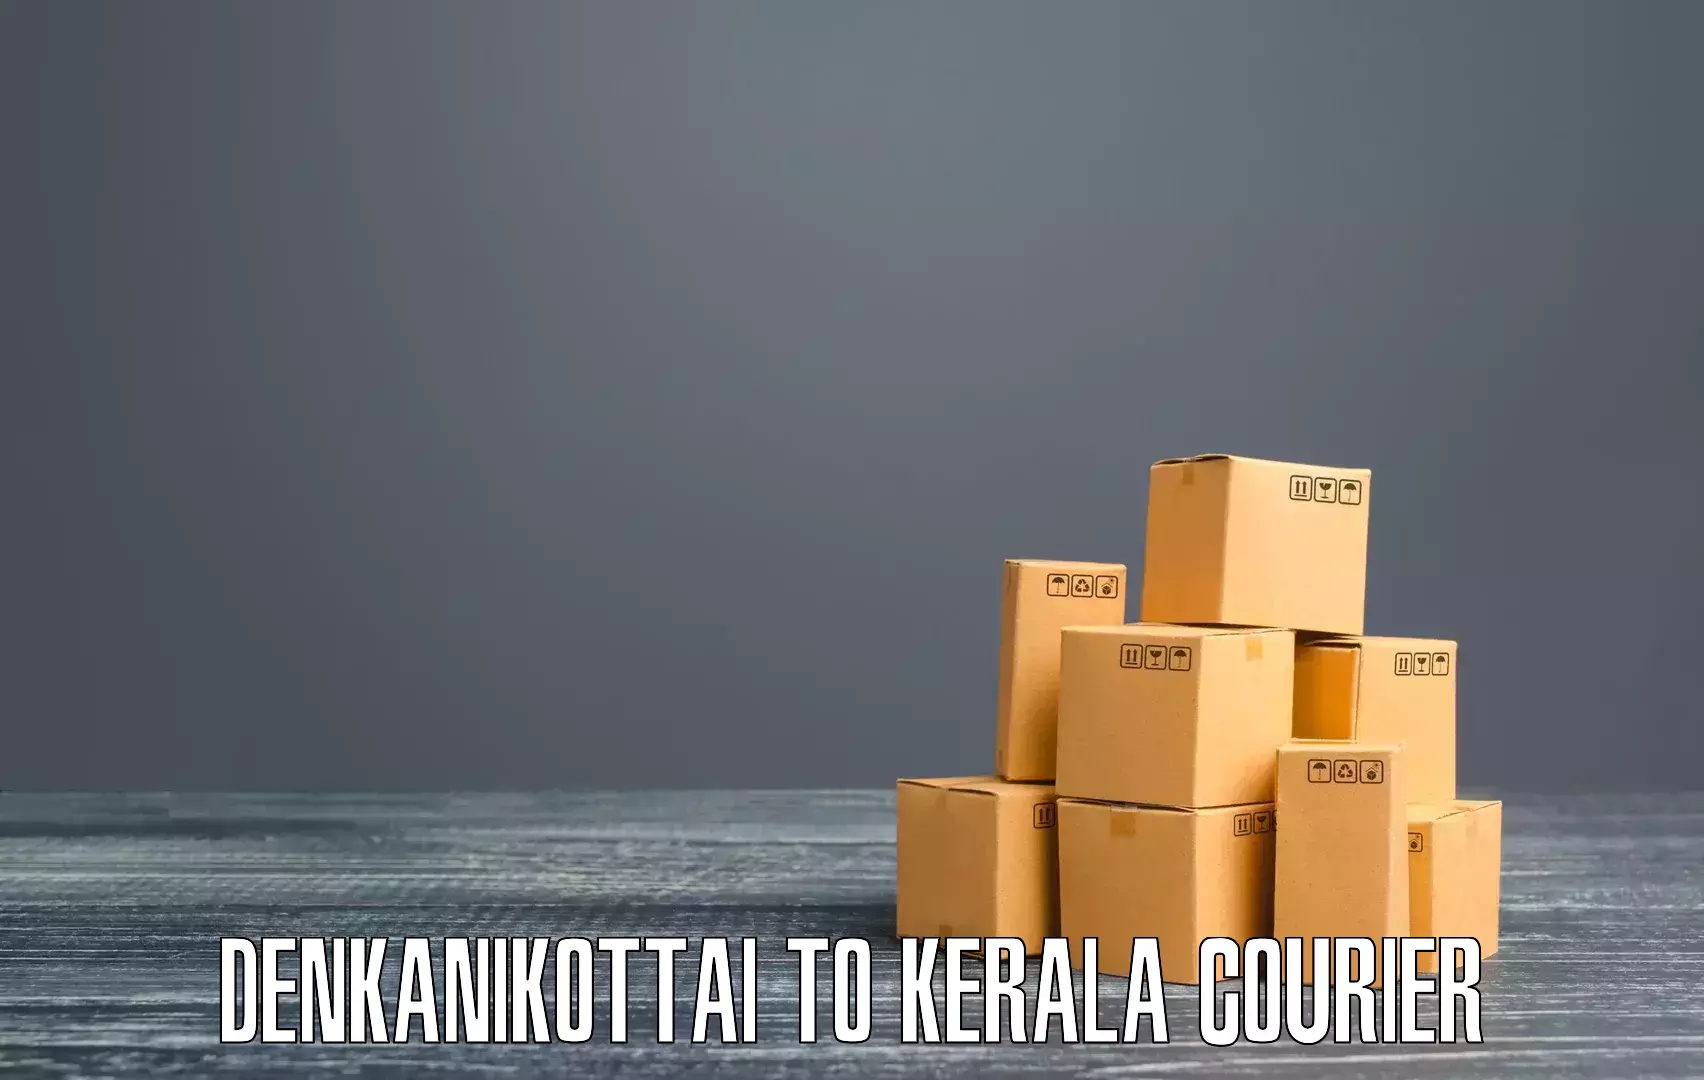 Quick dispatch service Denkanikottai to Kerala